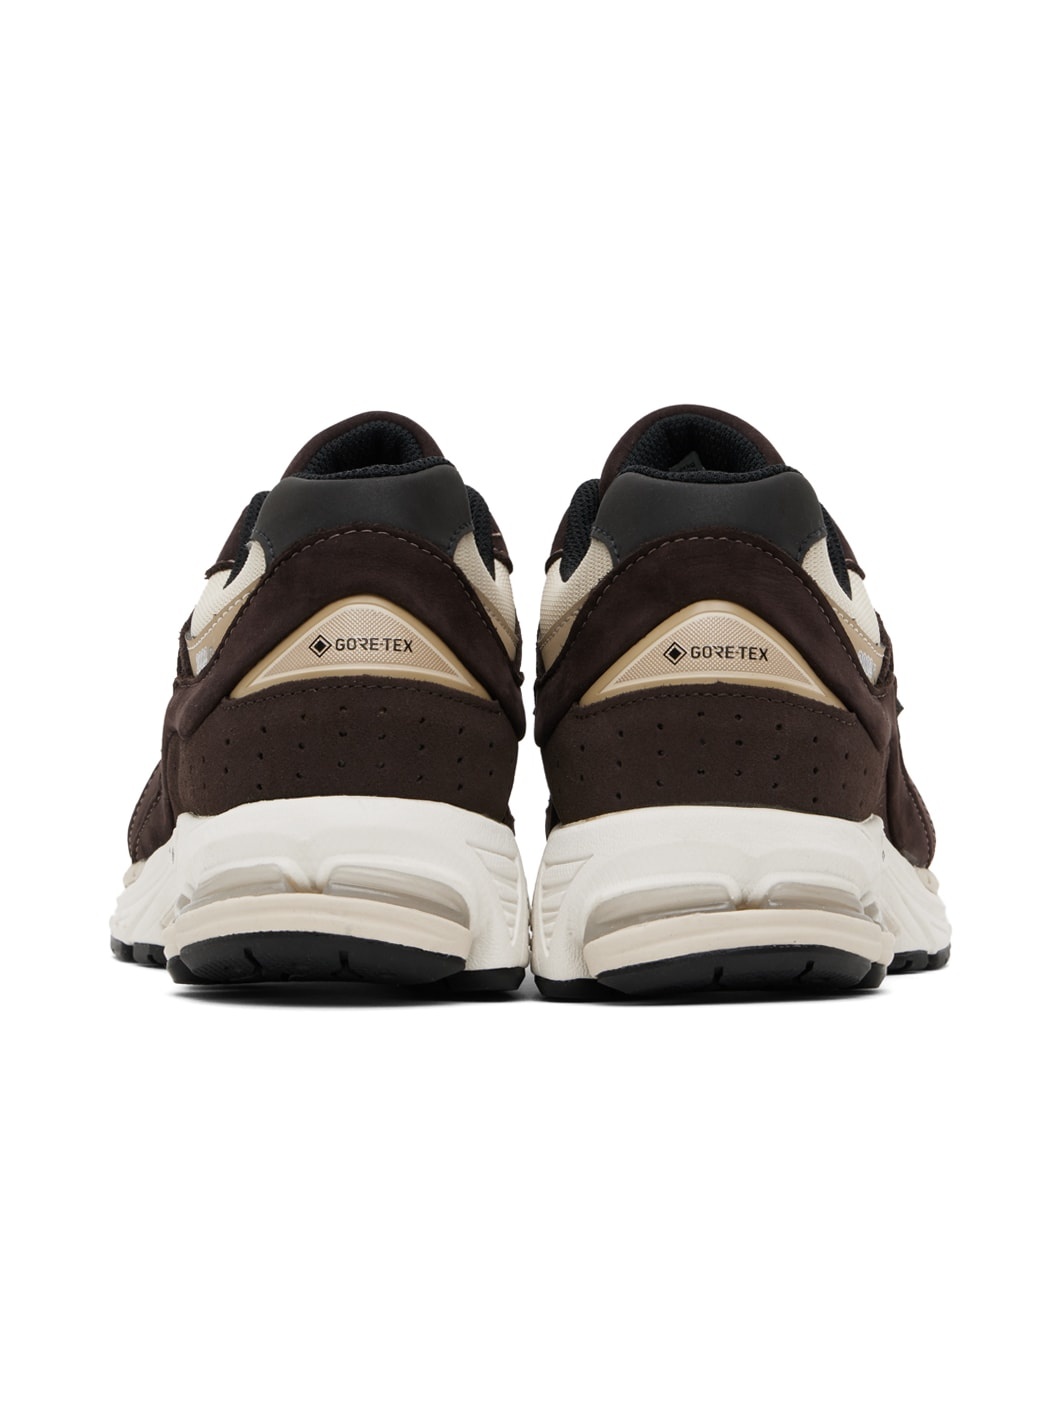 Brown & Beige 2002RX Gore-Tex Sneakers - 2